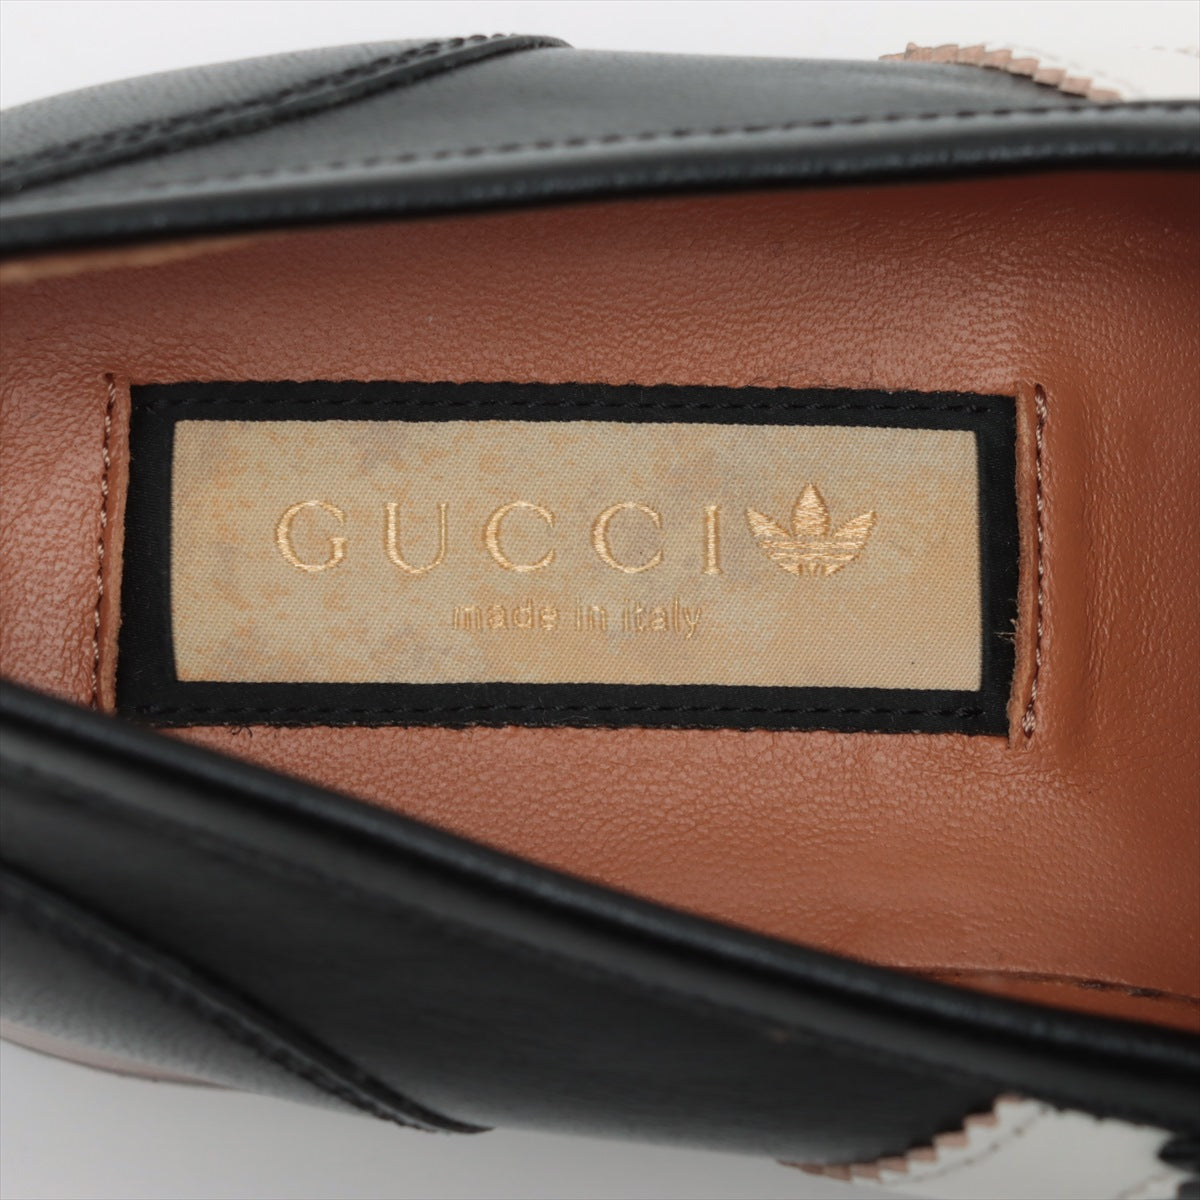 Gucci x Adidas Horse Bit 皮革 EU35 1/2 黑色 702284 S Line 盒裝包